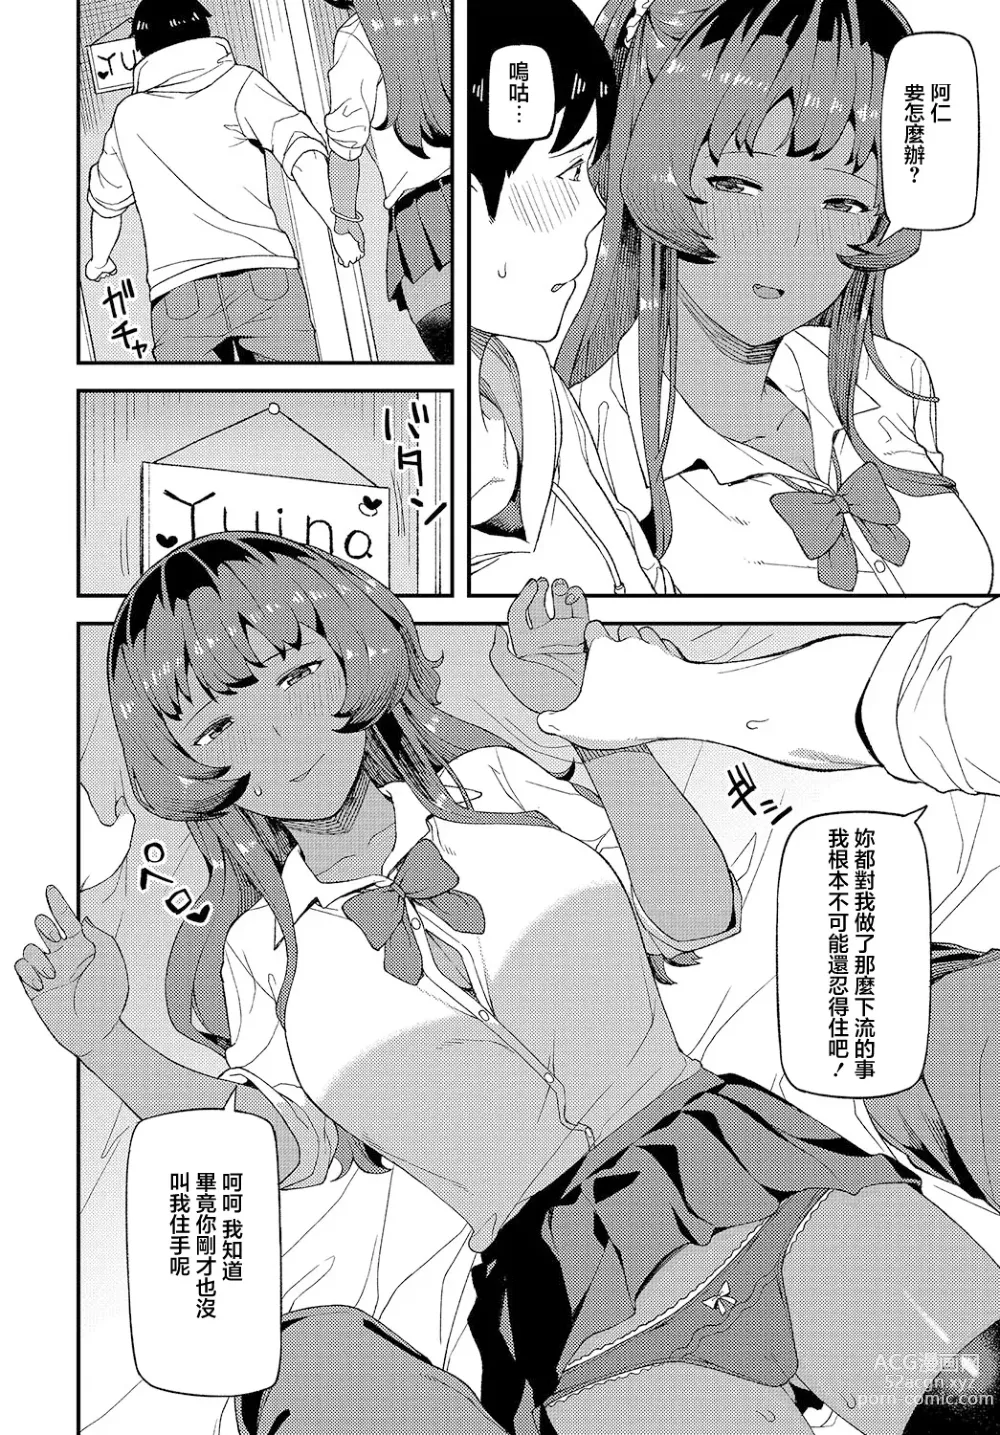 Page 9 of manga Shinkinkyori Renai